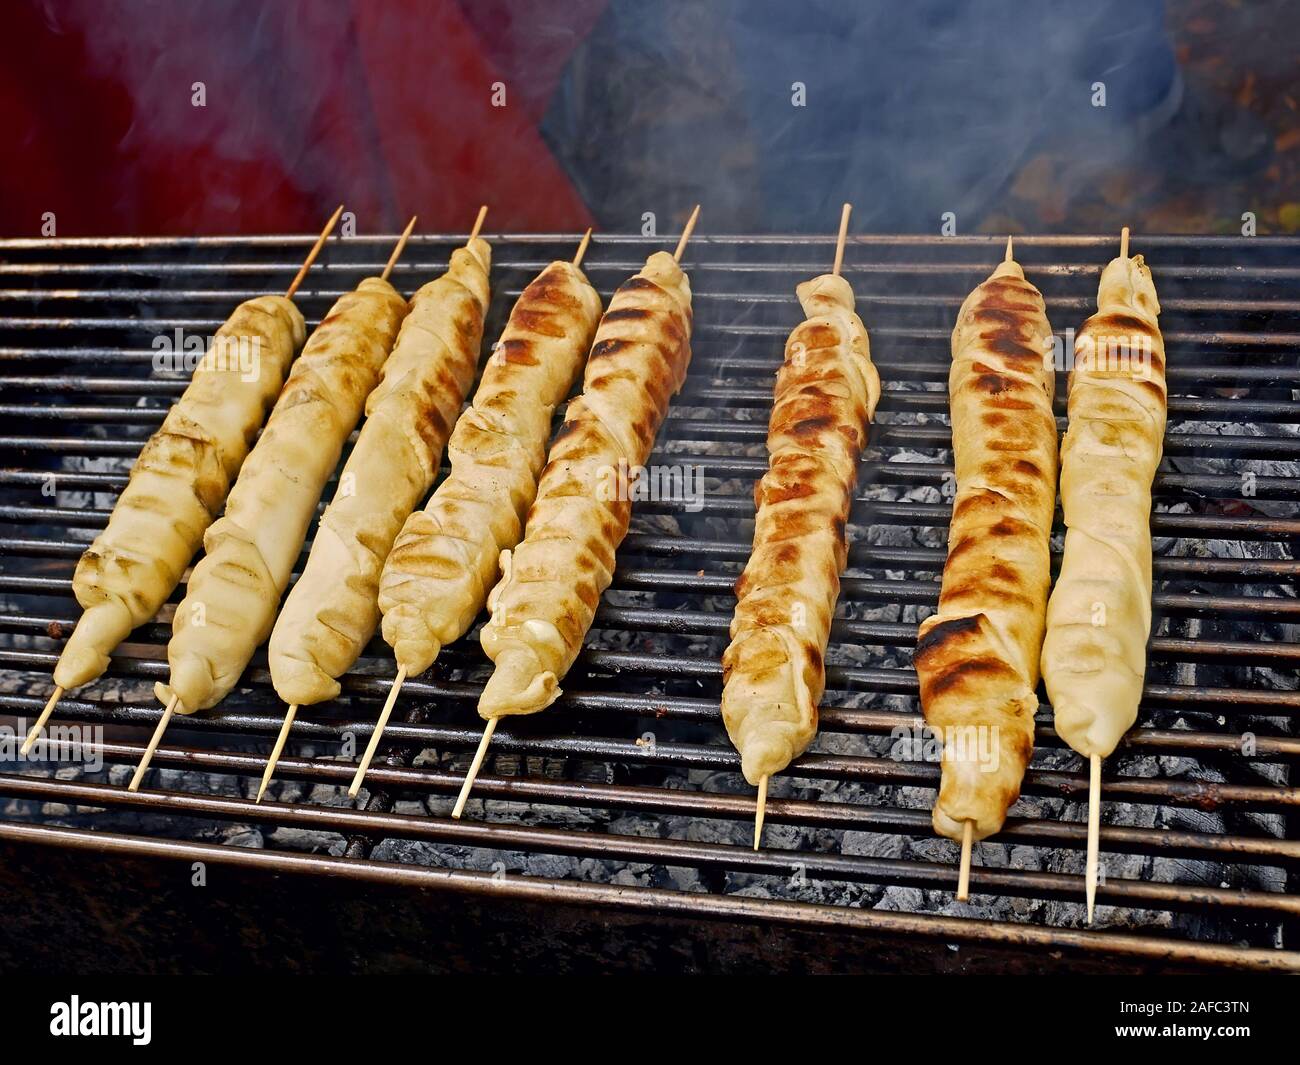 Fleischgericht in Teig um holzstäbchen aufgewickelt wird gegrillt am Bügeleisen Bars über einen Schwelbrand, close-up Stockfoto